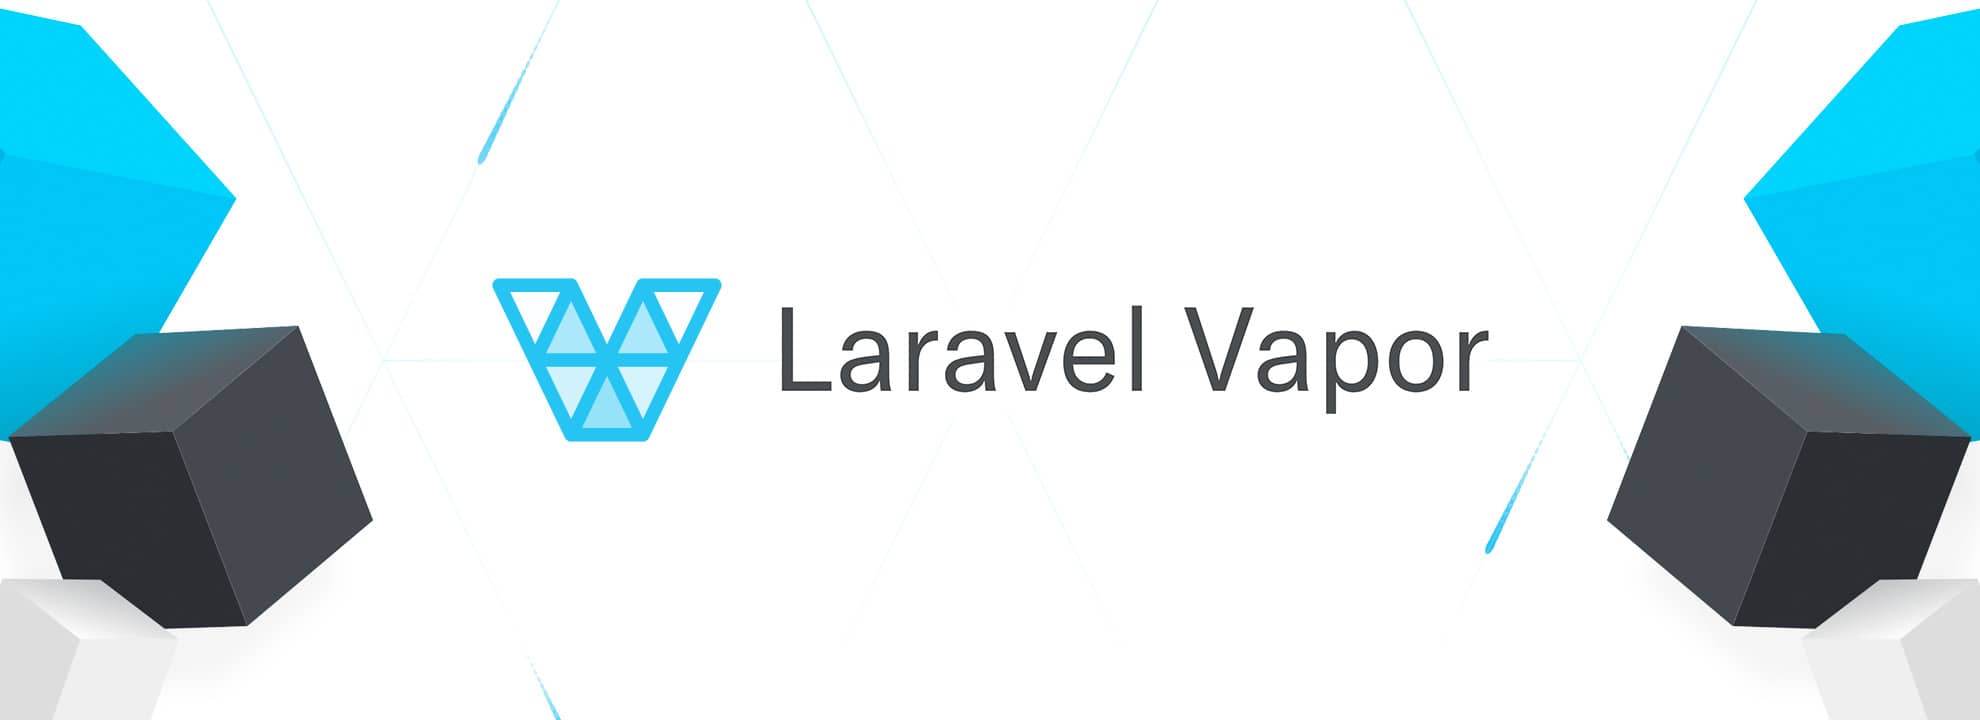 Laravel Vapor - telepítés és konfigurálás